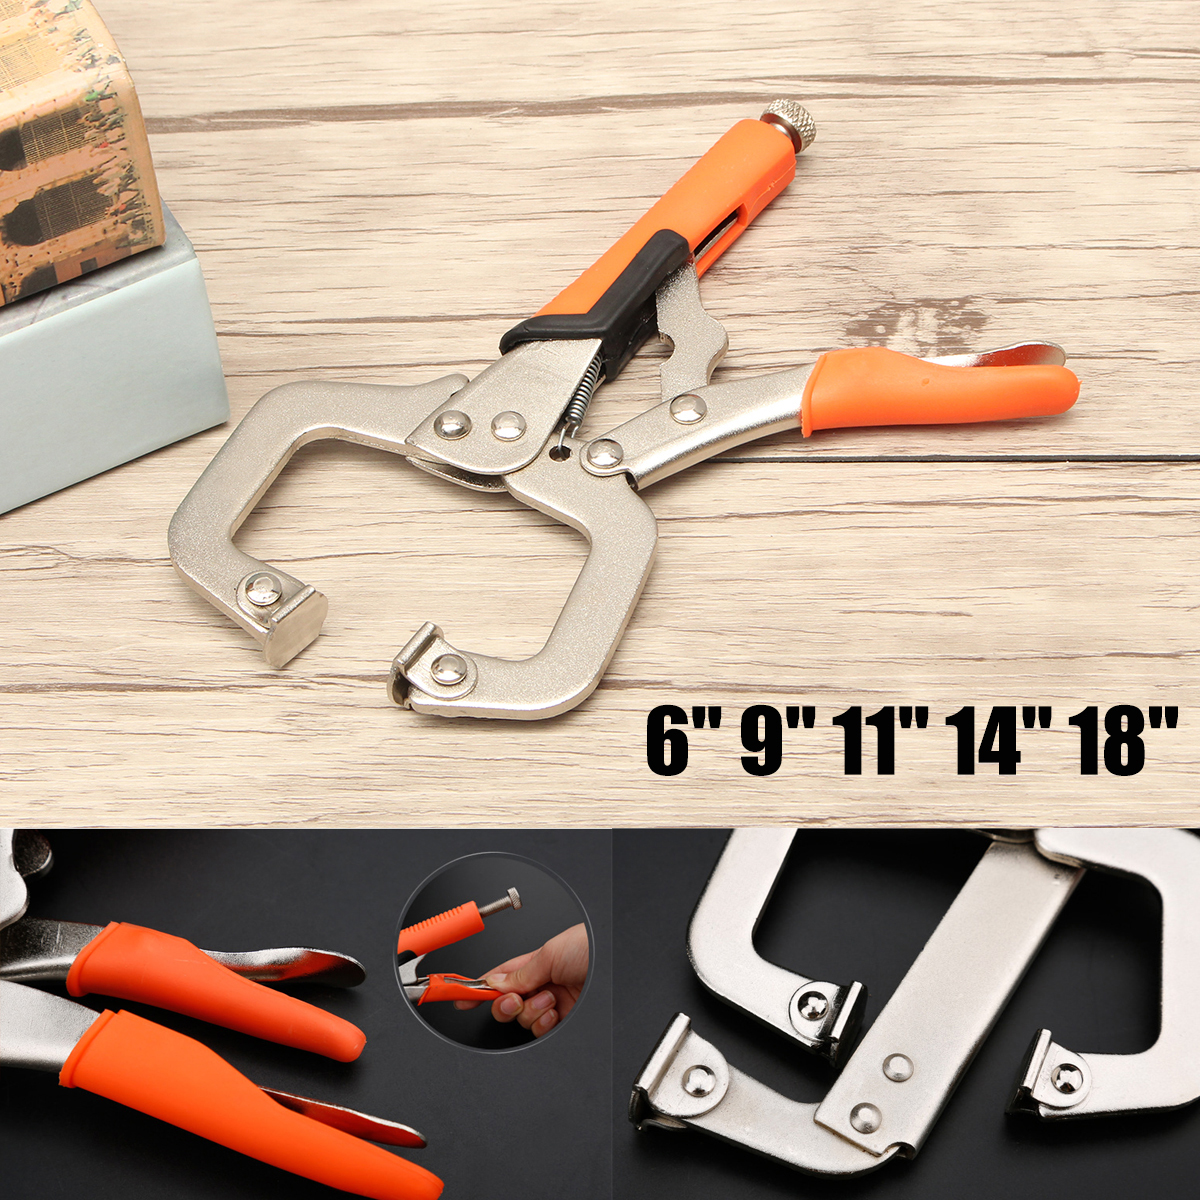 69111418inch-Alloy-Steel-C-Bracket-Vise-Grip-Welding-Quick-Pliers-Hand-Tool-1260840-4